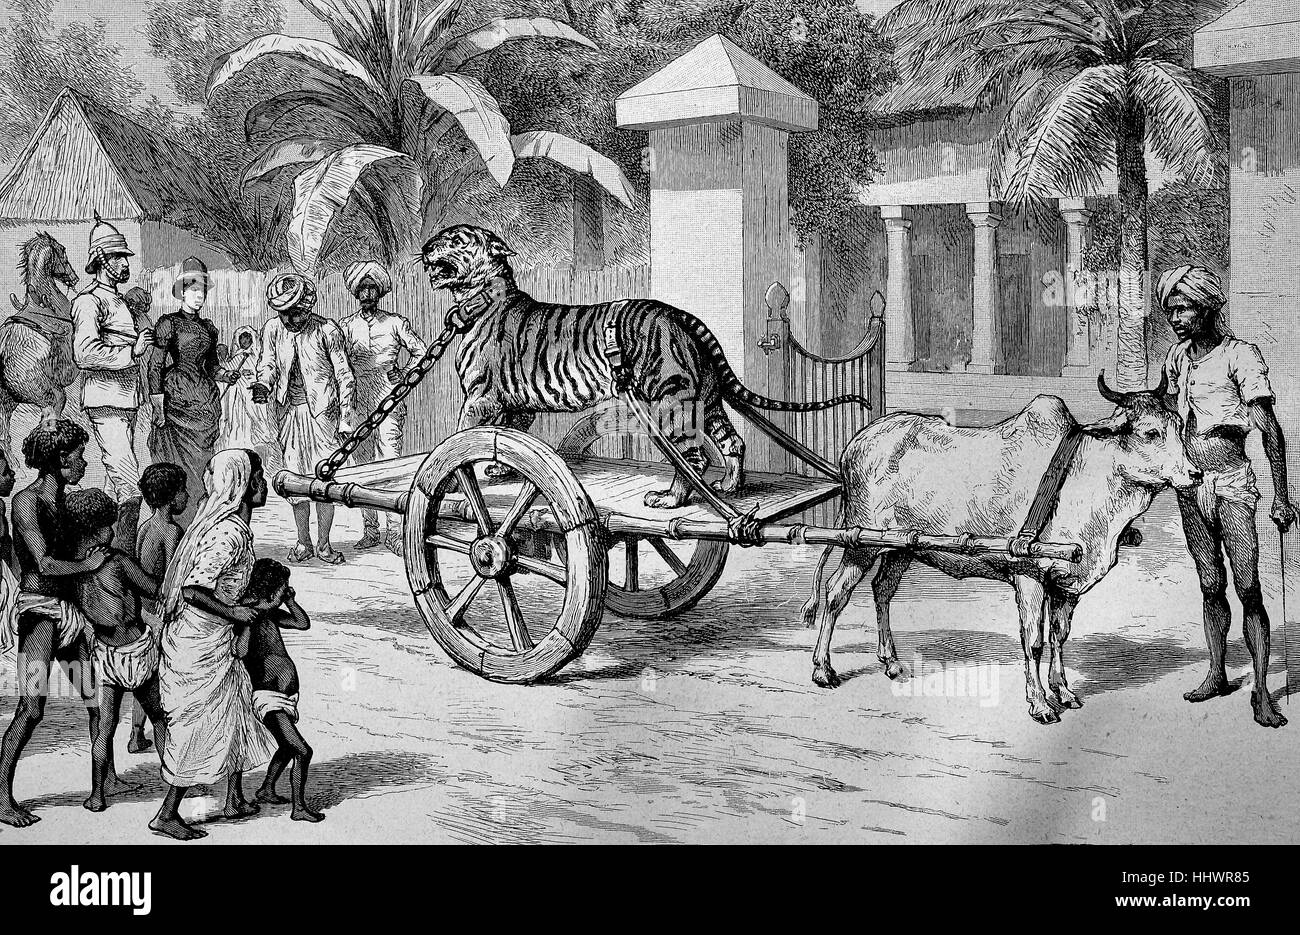 Une chaîne, capturé tiger est conduit sur une voiture par la route, l'Inde, l'image historique ou illustration, publié 1890, l'amélioration numérique Banque D'Images